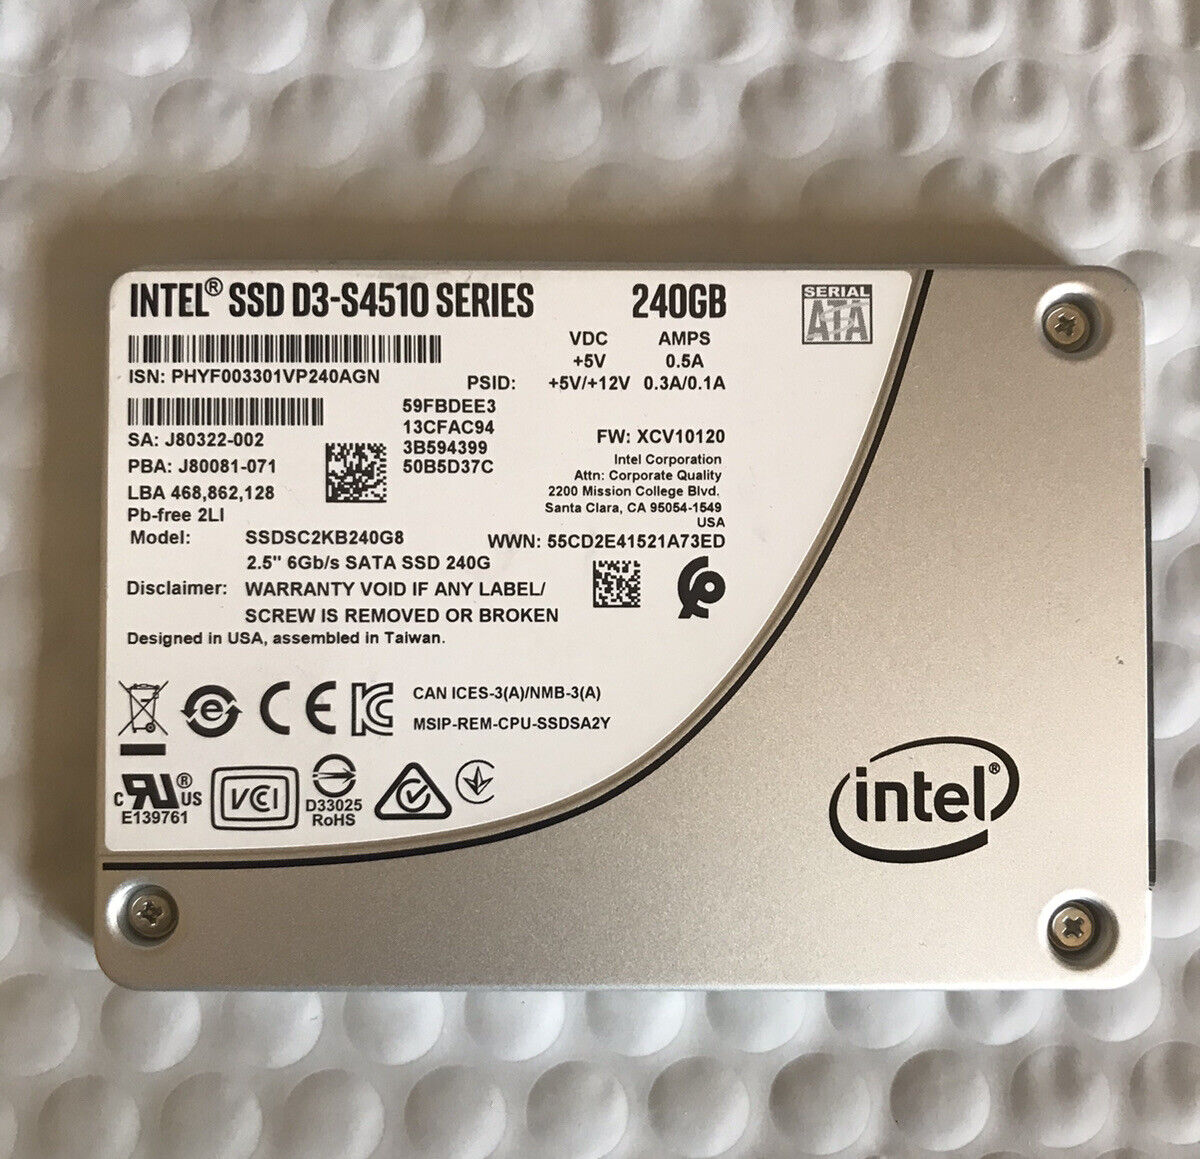 Intel SSD D3-S4510 Series 2.5” 6Gb/s Sata SSD 240gb Model SSDSC2KB240G8